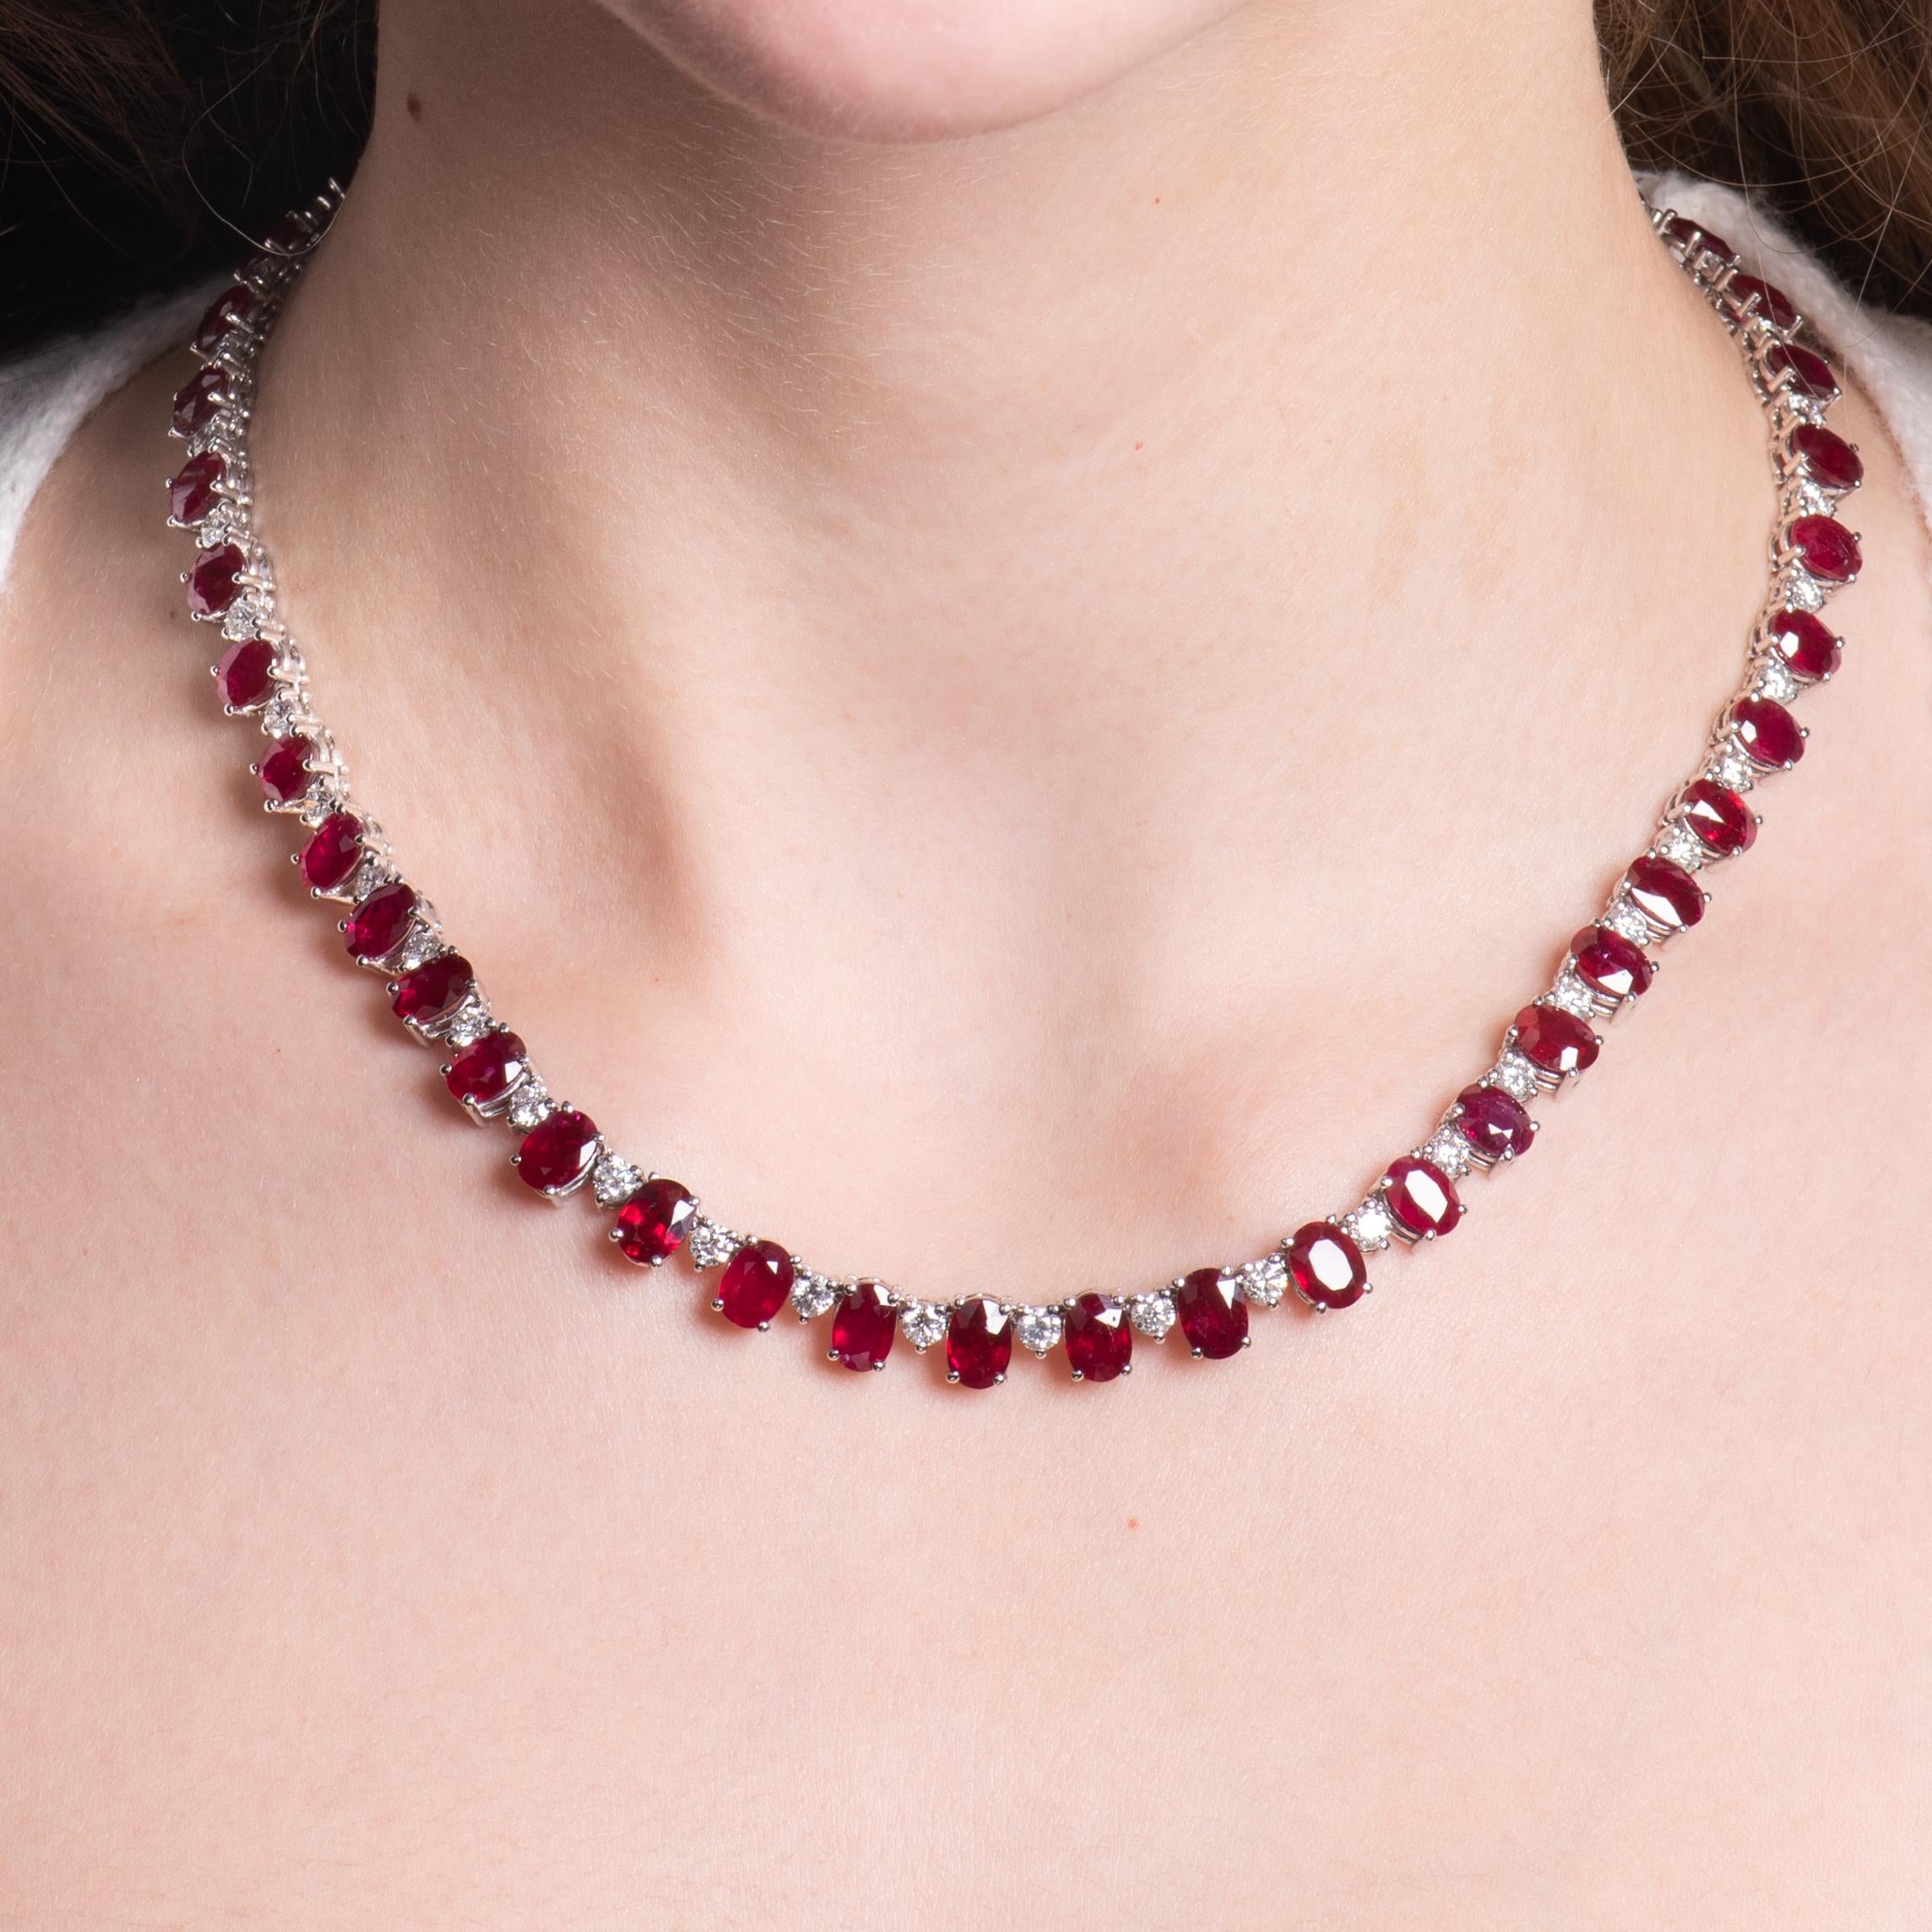 Diese exquisite Halskette besteht aus ovalen Rubinen mit einem Gesamtgewicht von 44,49 ct., die sich über die gesamten 18 Zoll der Halskette erstrecken und von runden Diamanten mit einem Gesamtgewicht von 6,90 ct. eingefasst werden. Die Rubine sind